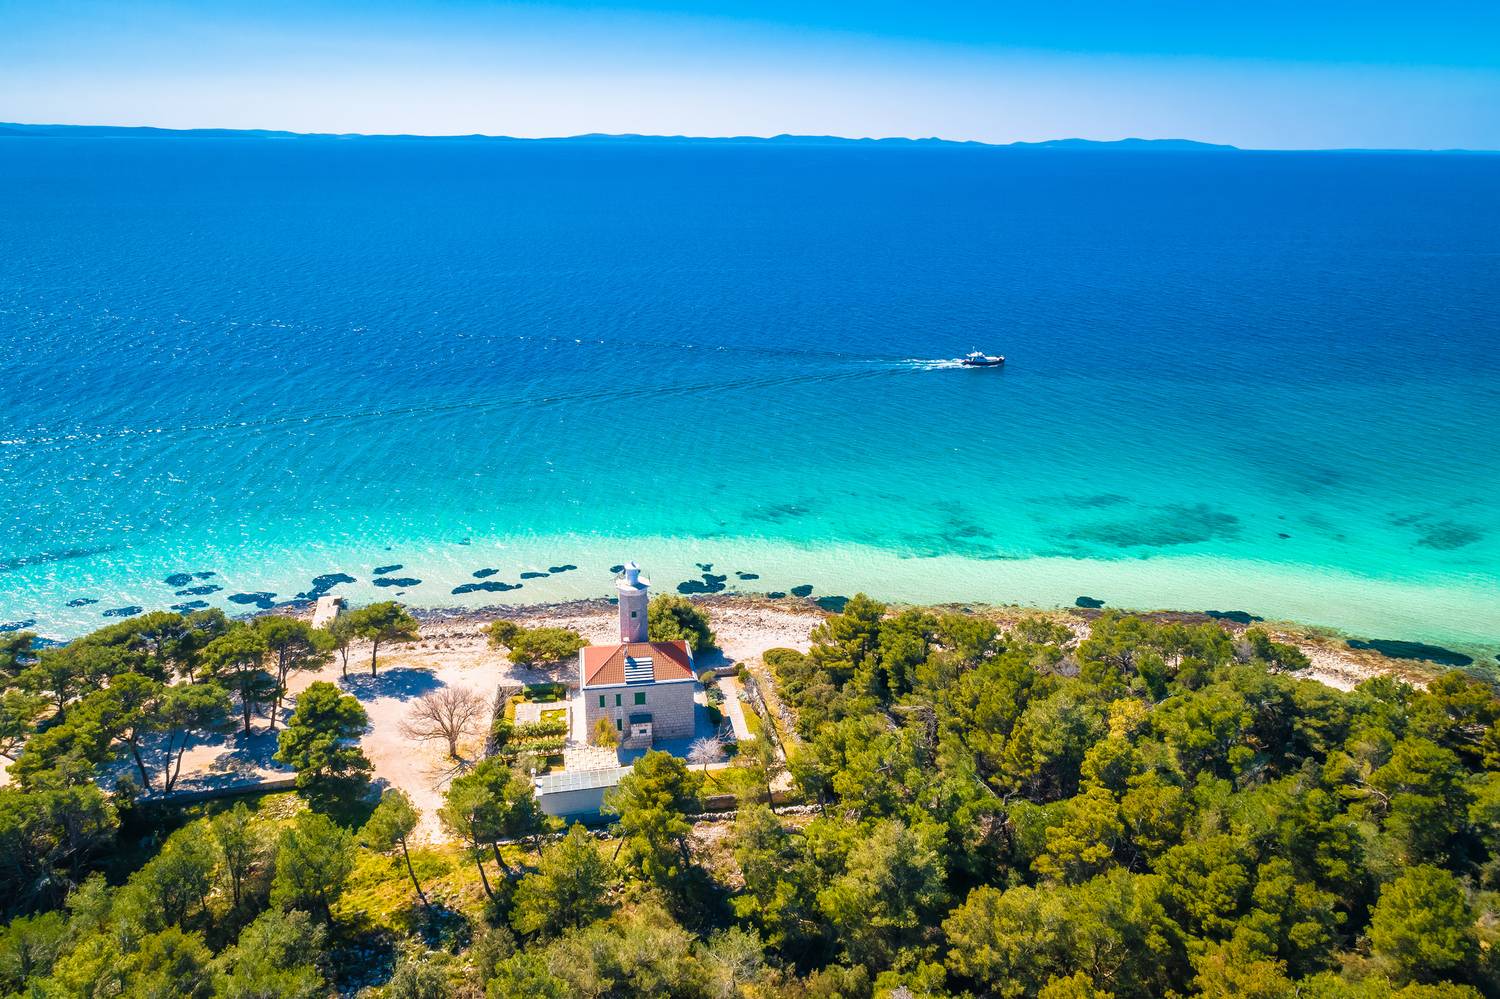 Zadar északi régiójában található Vir szigete, amelyet imádnak a magyarok a foglalási adatok szerint, sok magyar tulajdonú apartman is van itt, és megannyi látnivaló a világítótoronytól az izgalmas, vörös sziklákig.